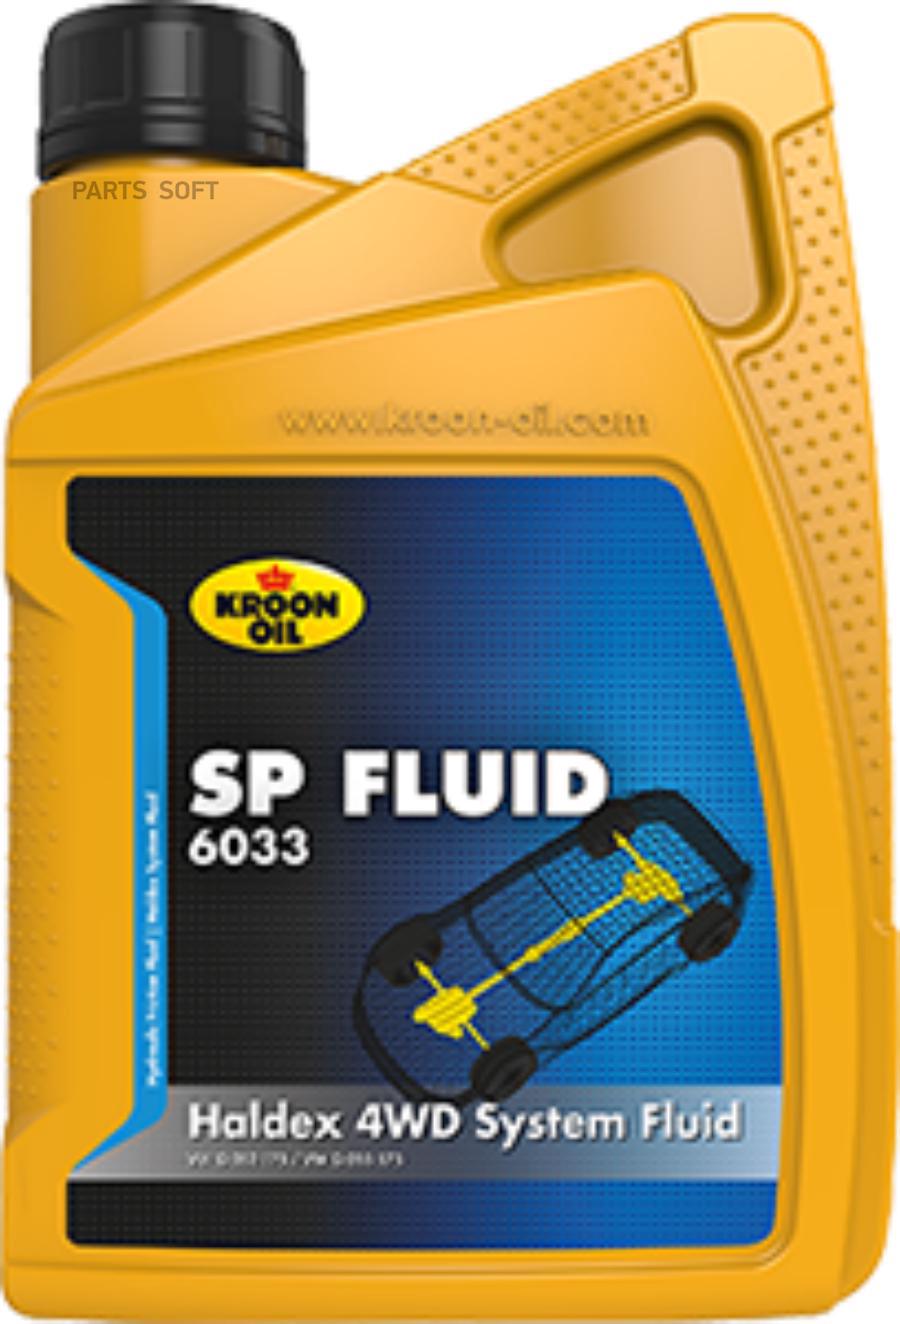 Жидкость Гидравлическая Sp Fluid 6033 850Ml KROON OIL 36978